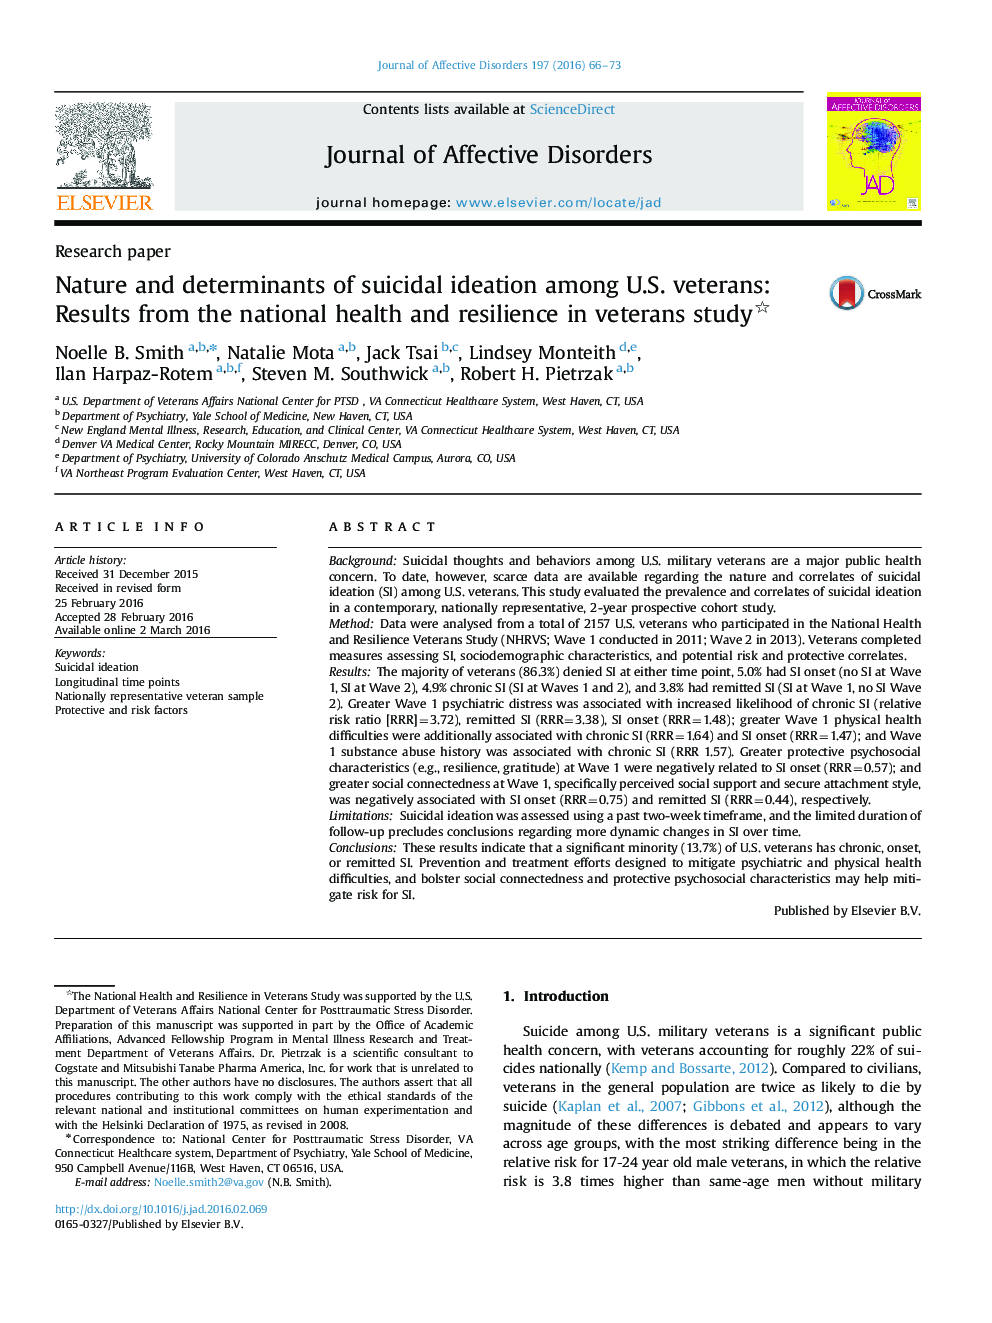 طبیعت و تعیین کننده ایده های خودکشی در میان جانبازان آمریکایی: نتایج سلامت ملی و انعطاف پذیری در مطالعات جانبازان 